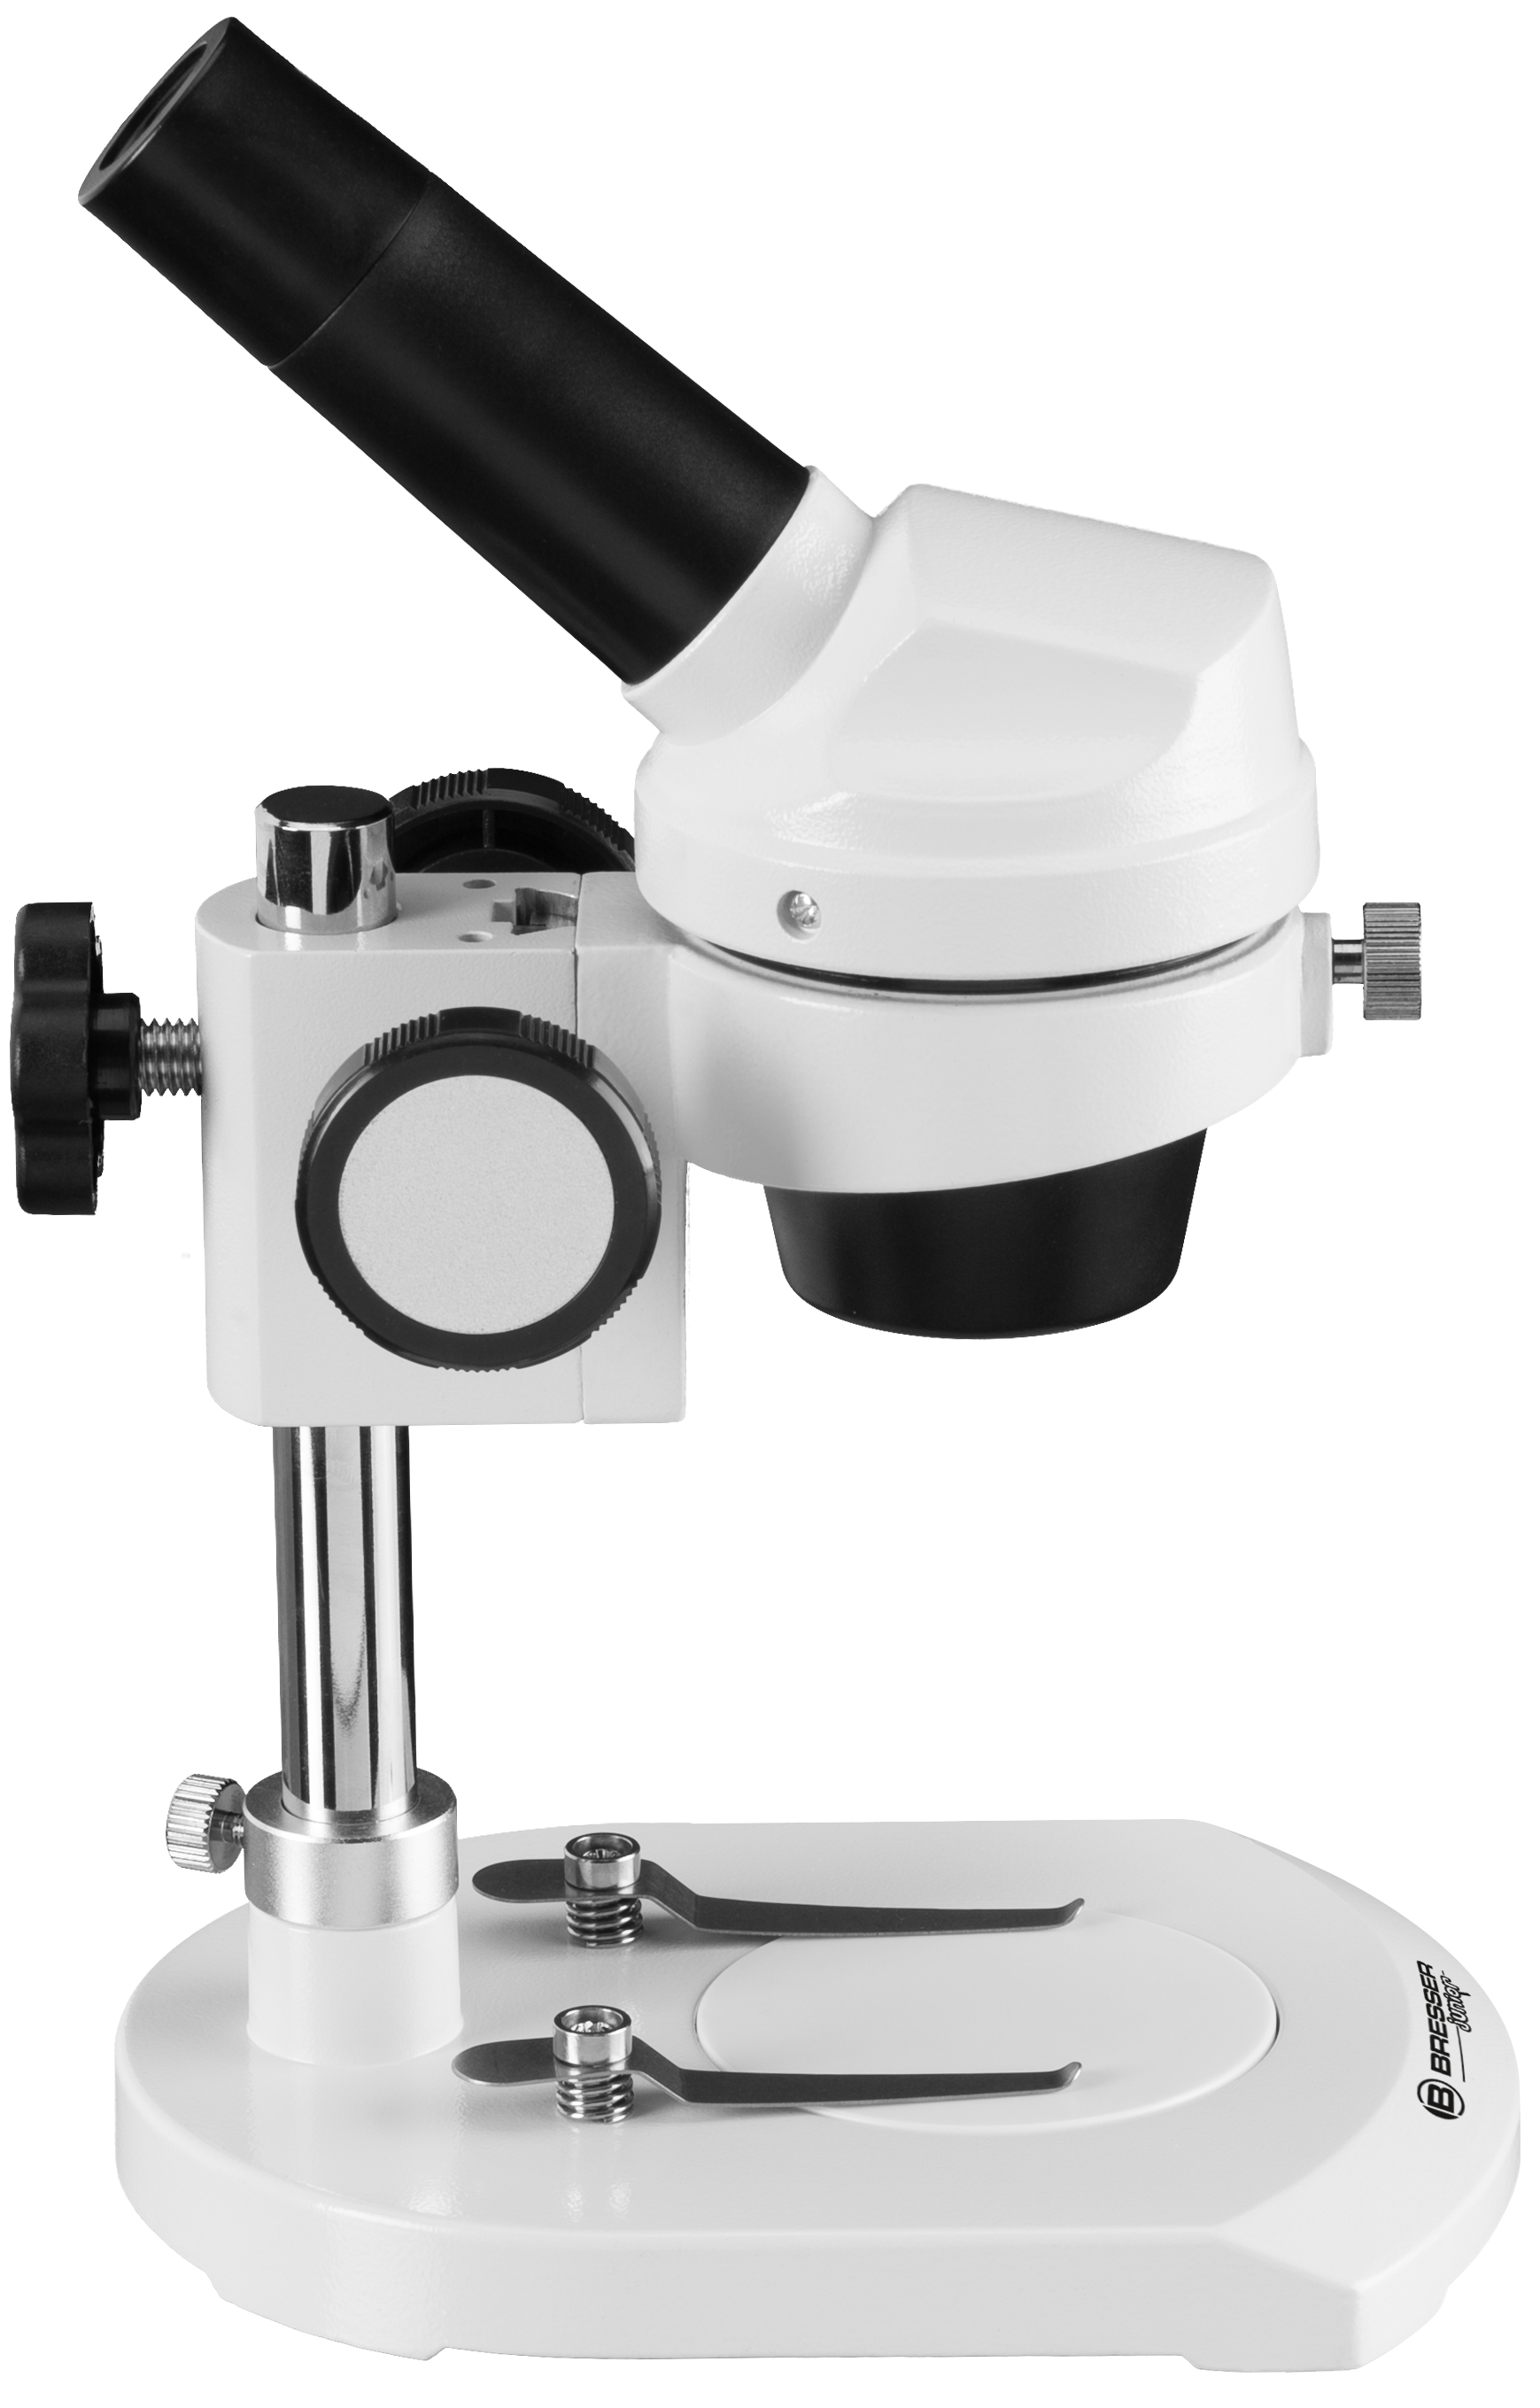 Microscope à Lumière incidente BRESSER JUNIOR avec Grossissement 20 Fois et Boîtier stable en Métal